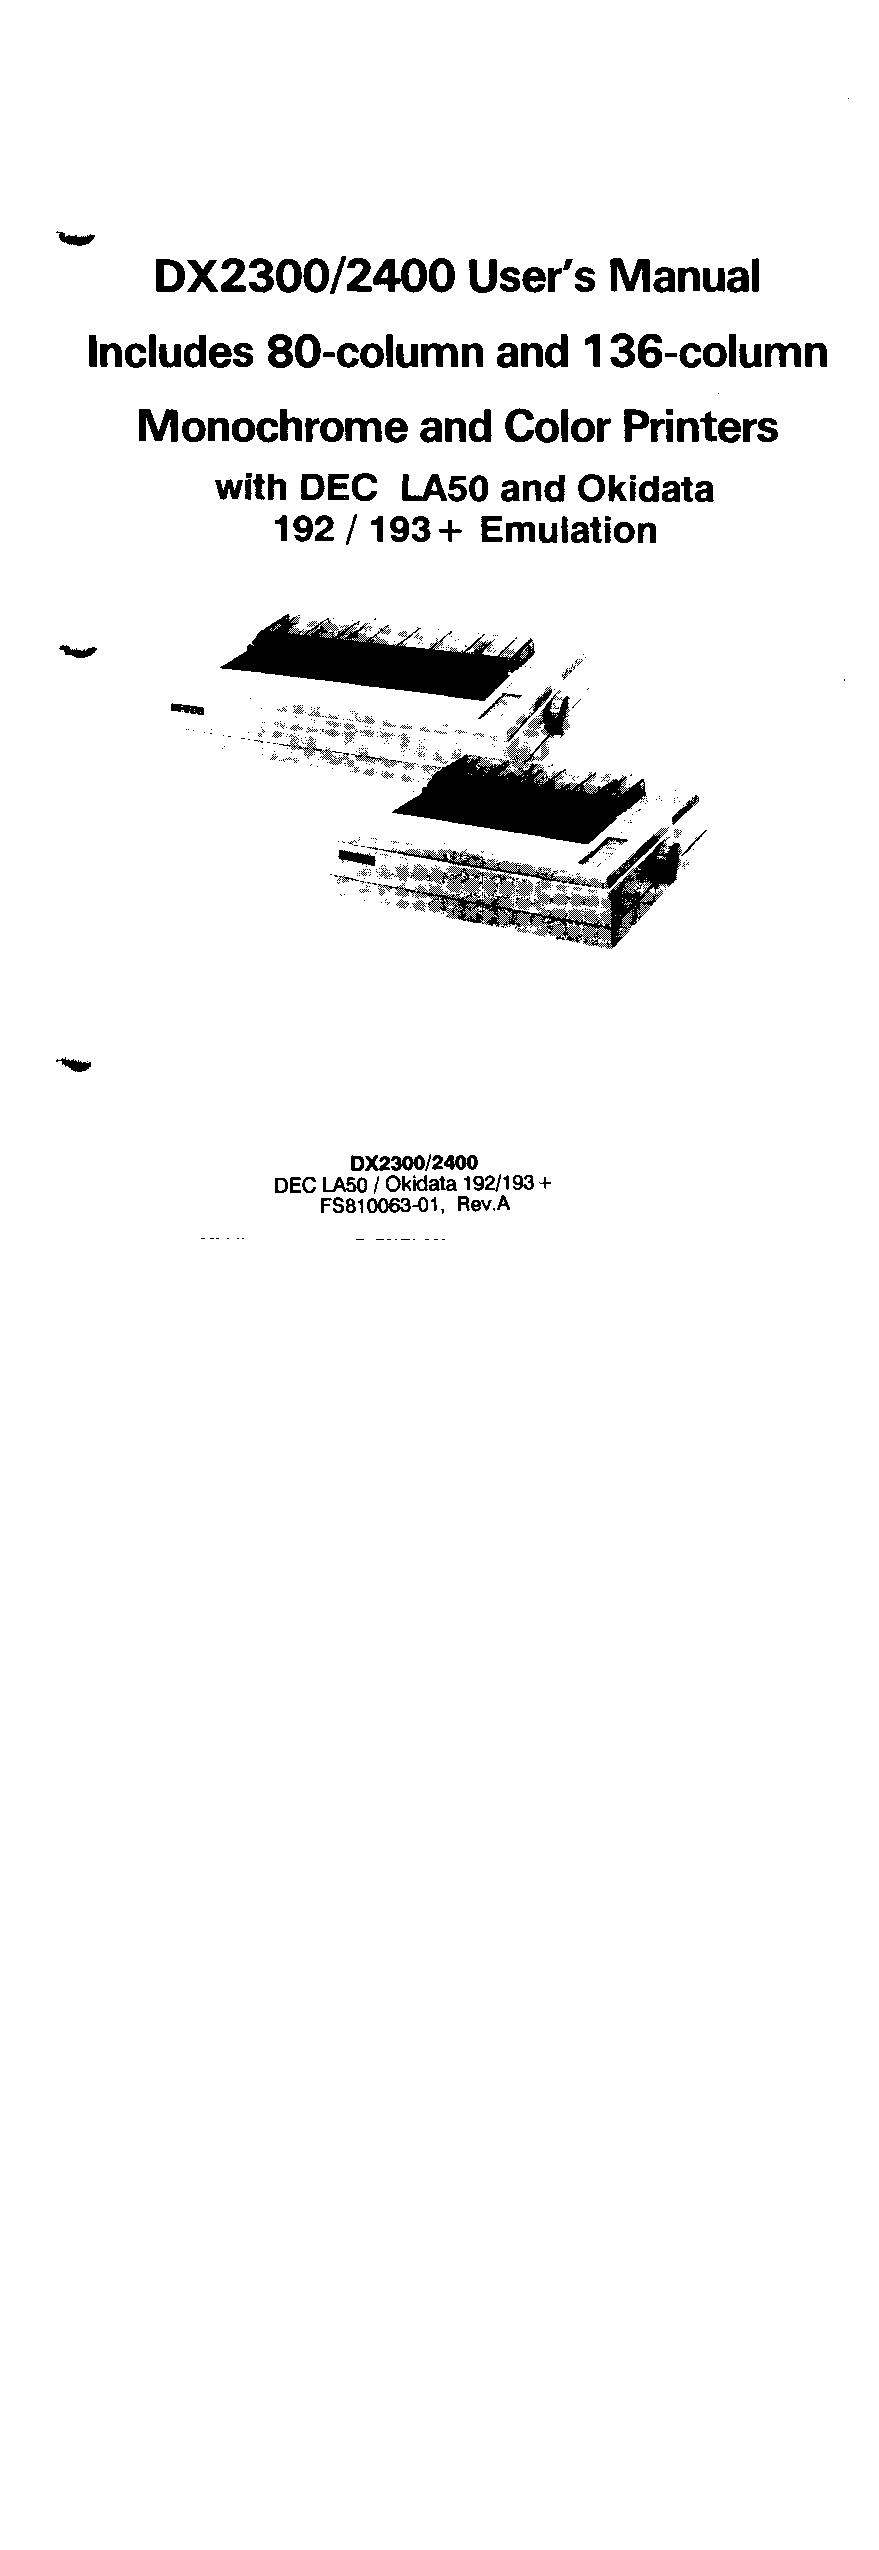 Fujitsu DX2300, DX2400 User Manual